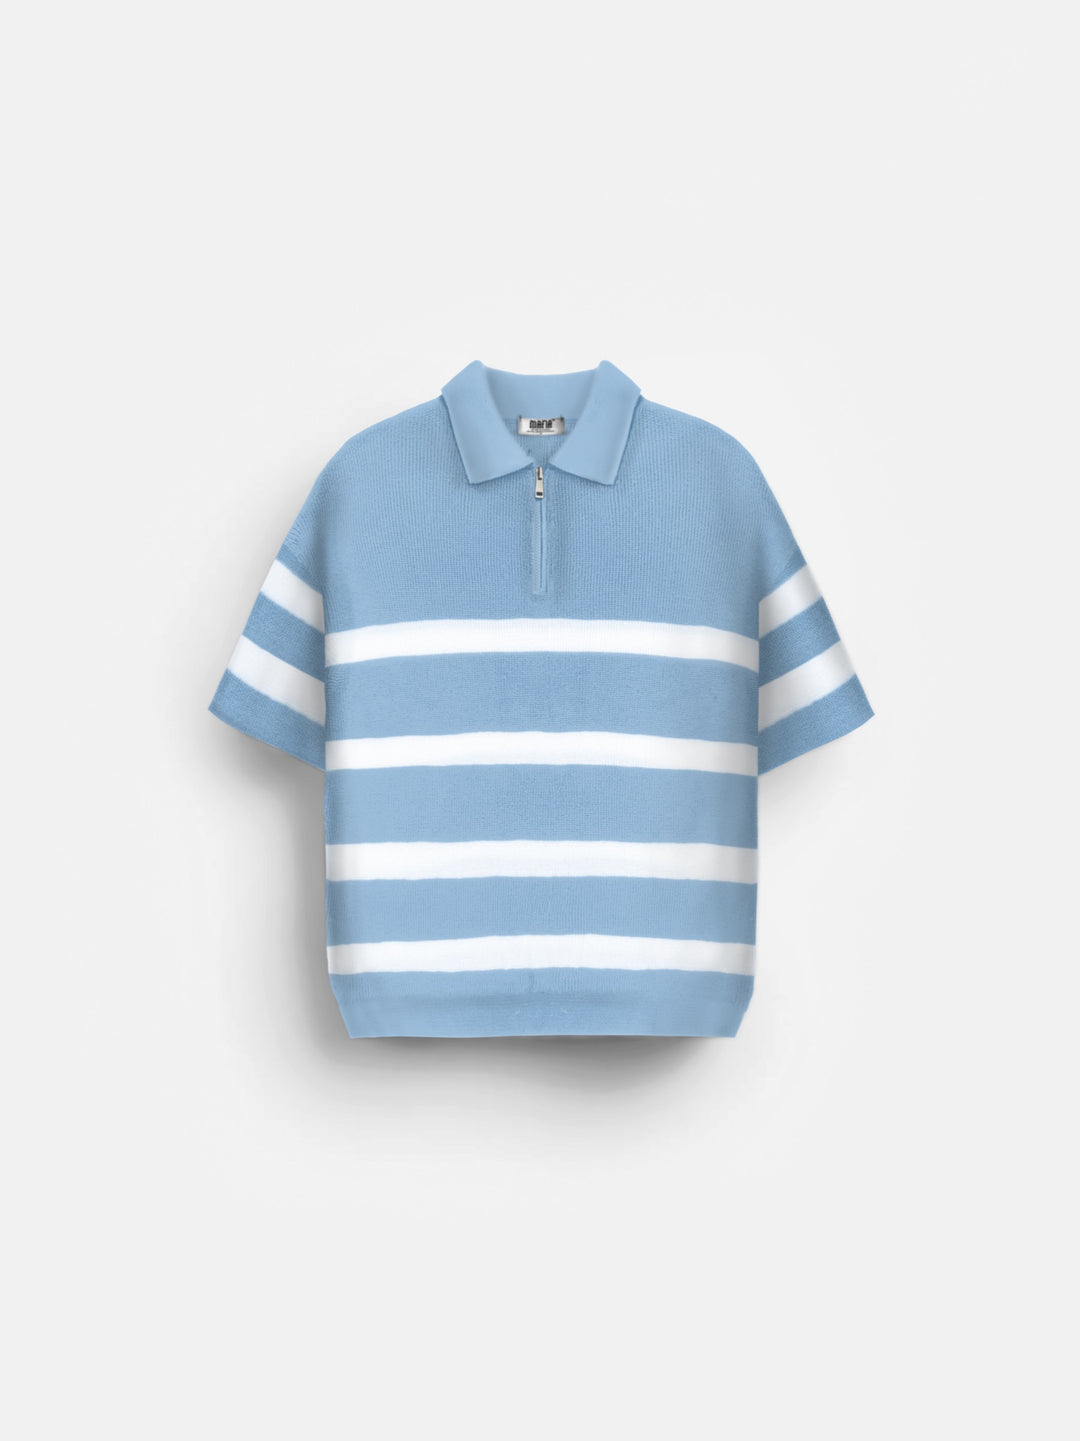 Regular Knit Zipper T-shirt - Babyblue